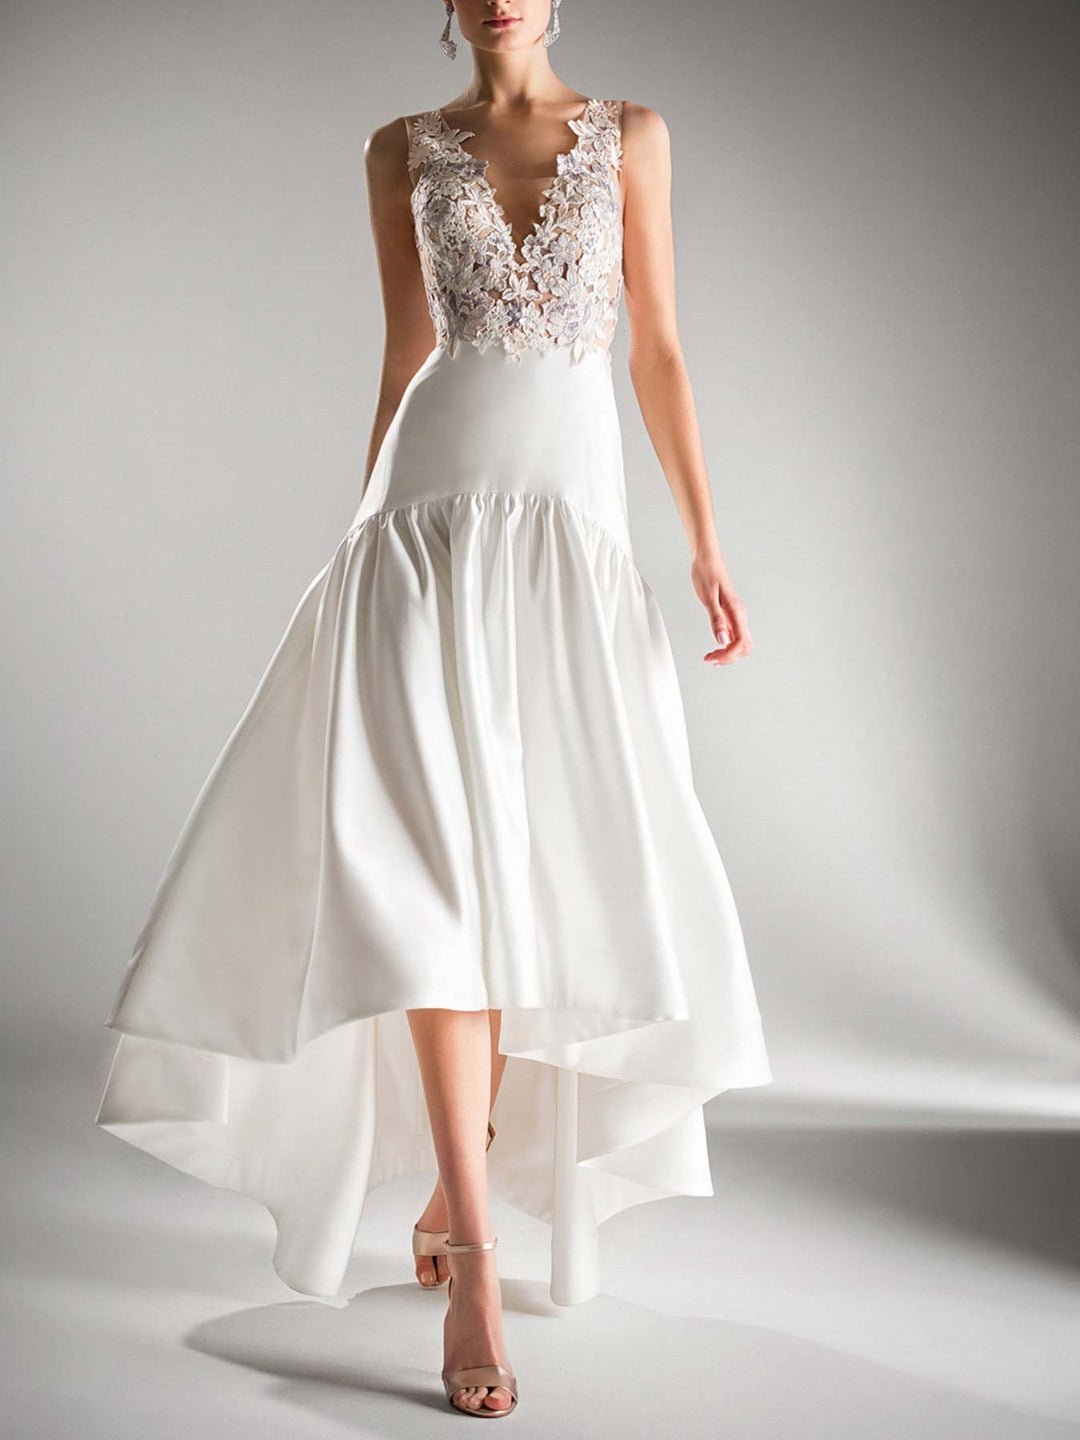 A-Line/Princess V-neck sleeveless Asymmetrical Wedding Dress with Applique